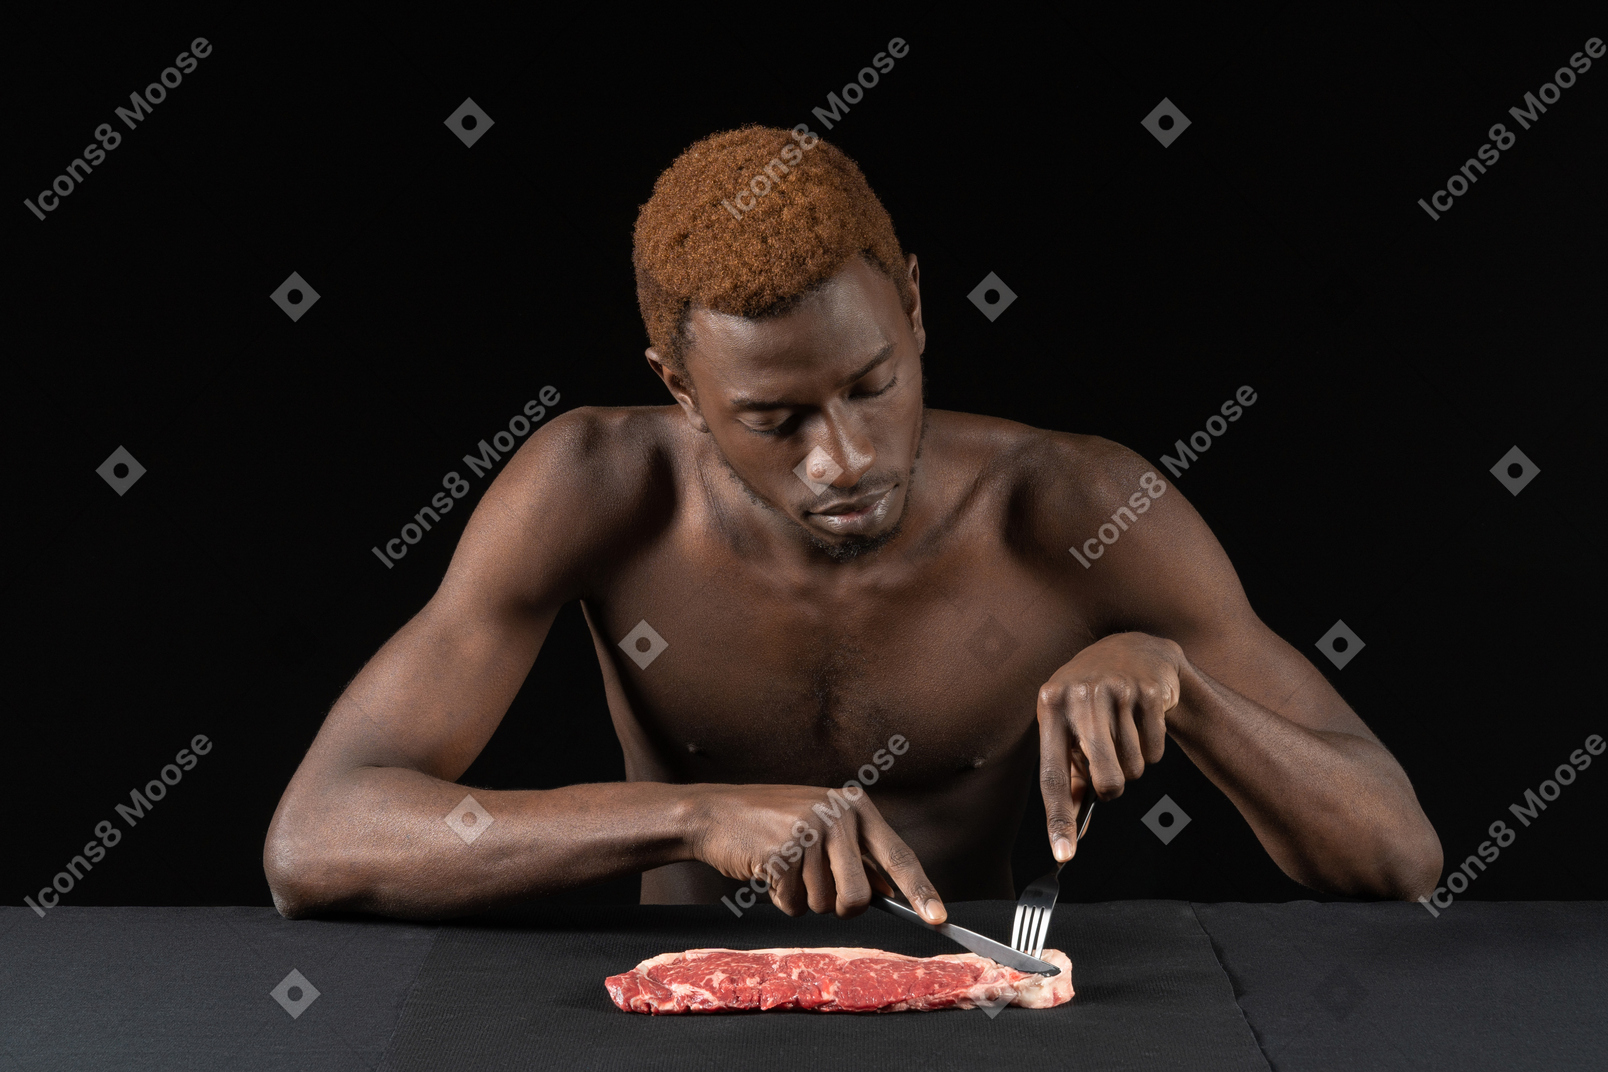 Vista frontal de un joven afro cortando carne